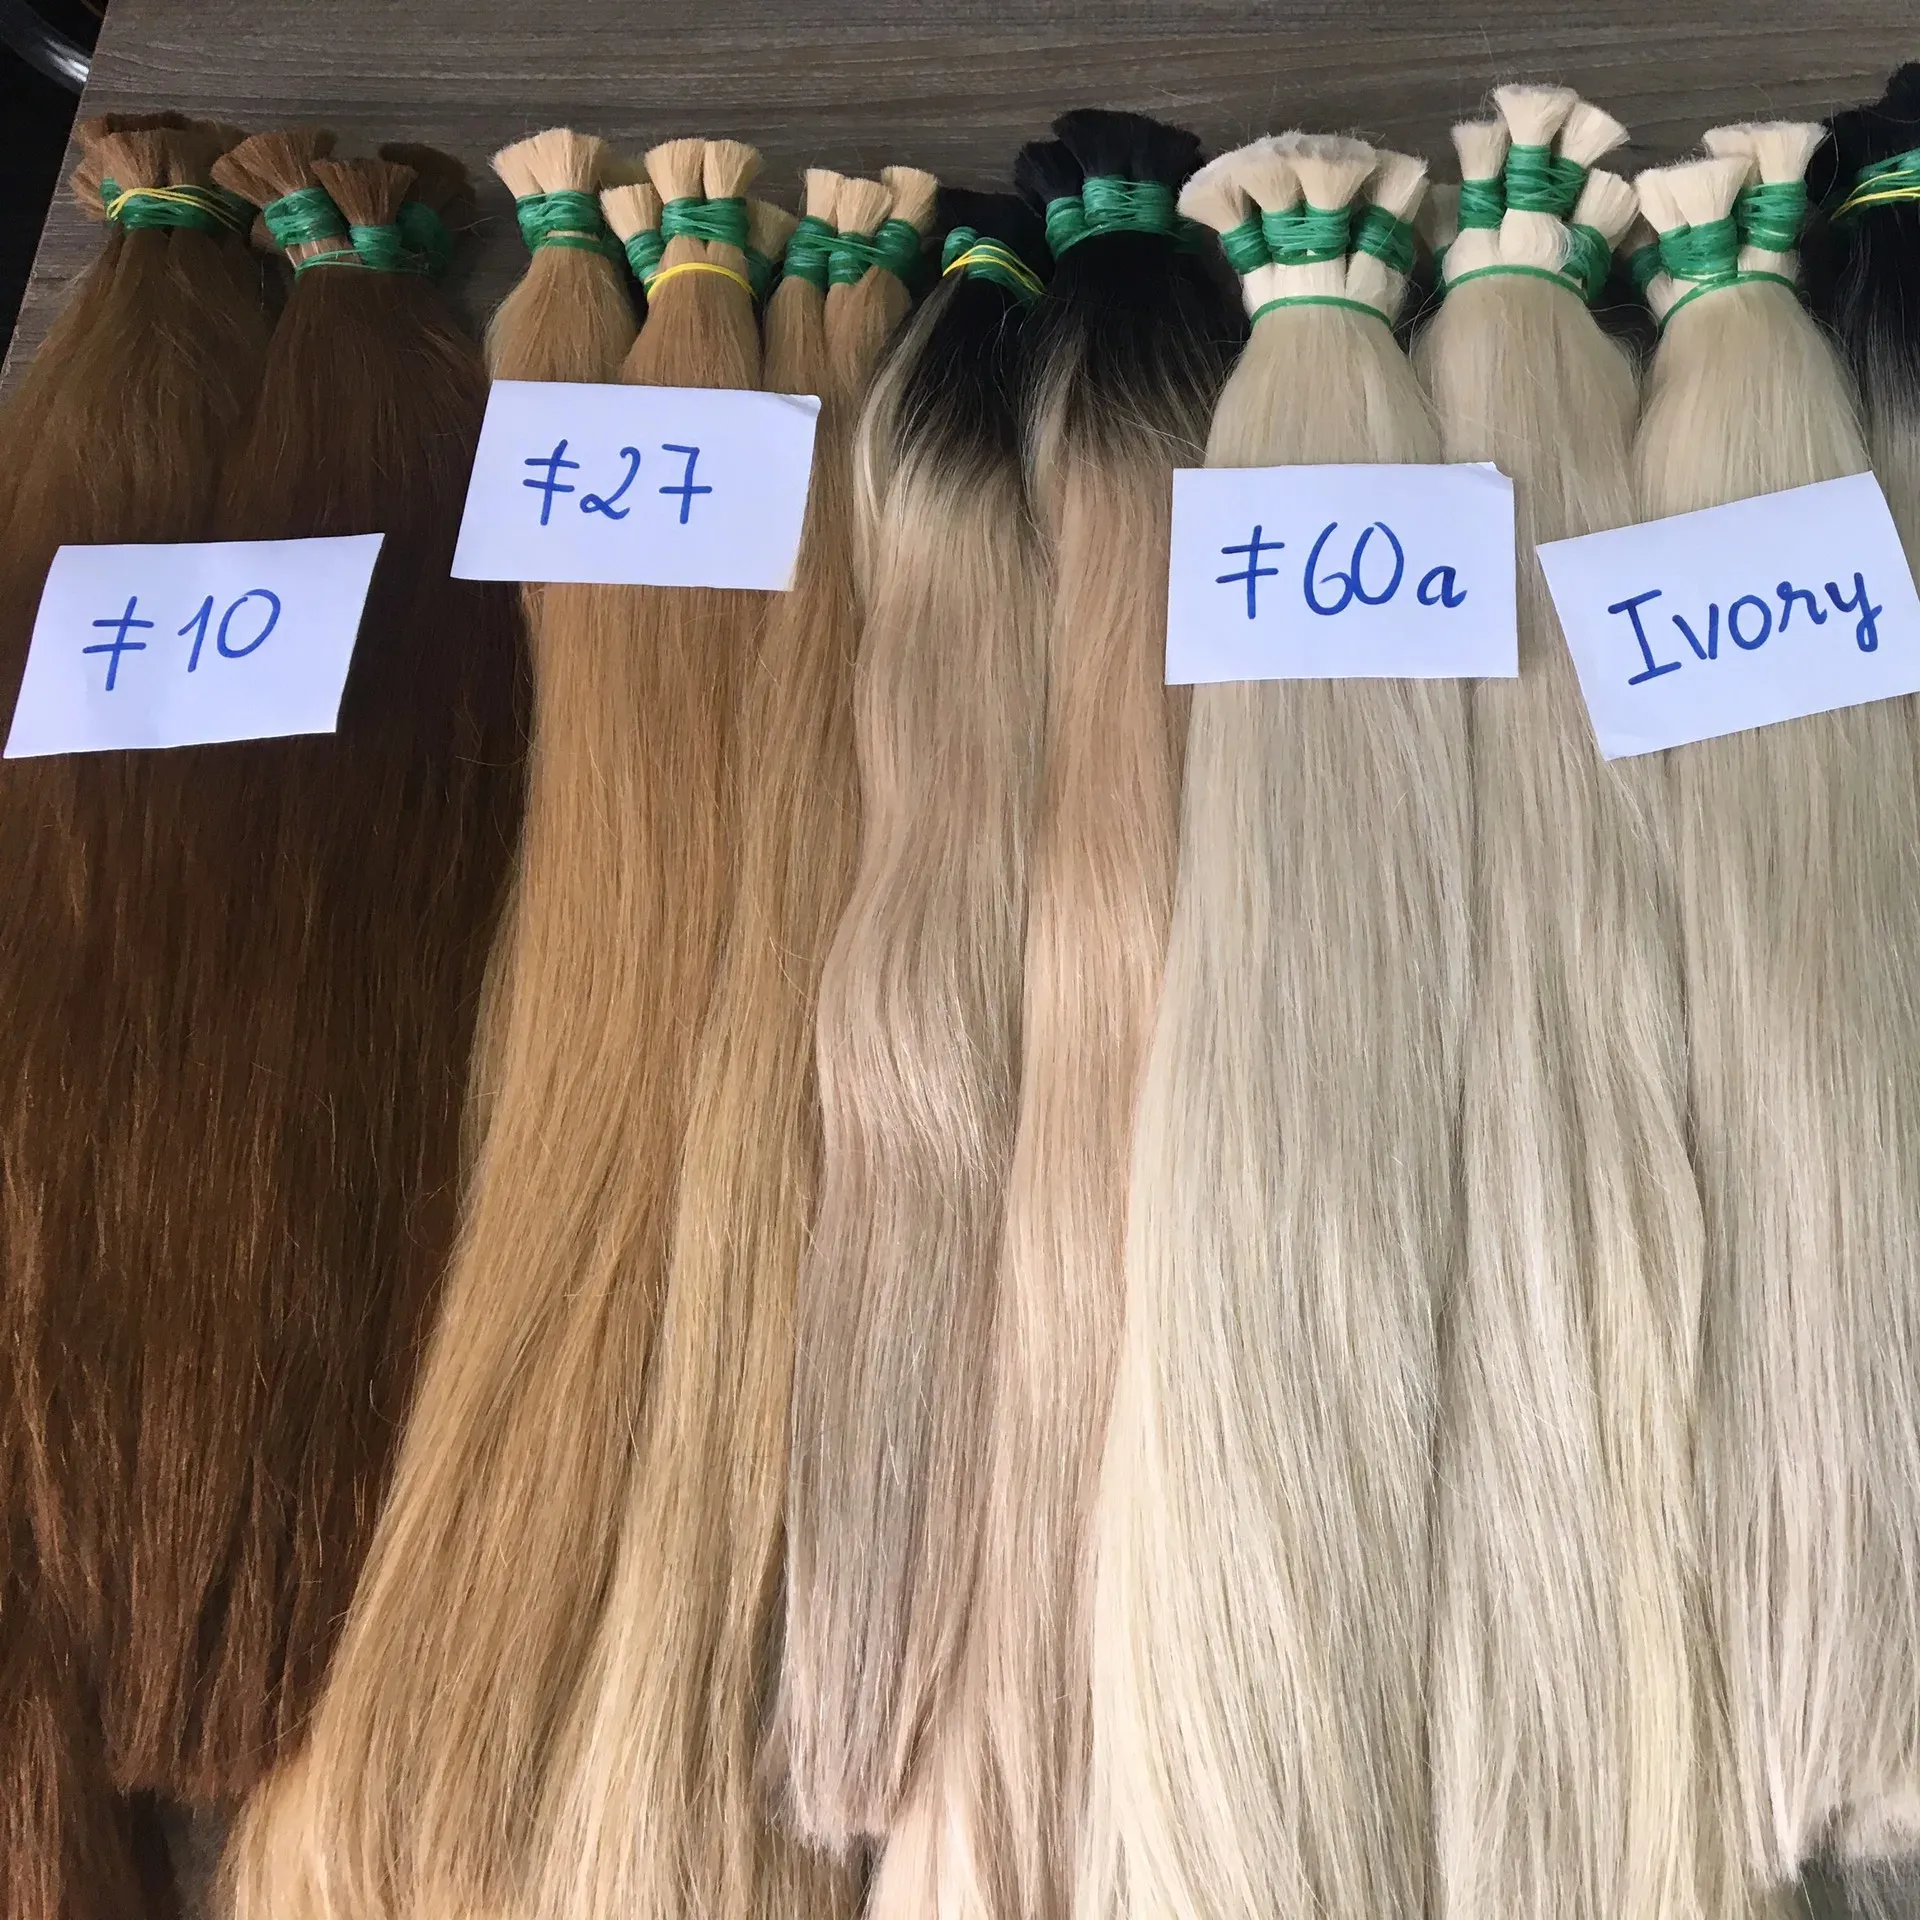 Bulk Hair Extensions Vietnam esische Virgin Hair Bulk Haar verlängerung Keine Chemische Verarbeitung Fabrik preis